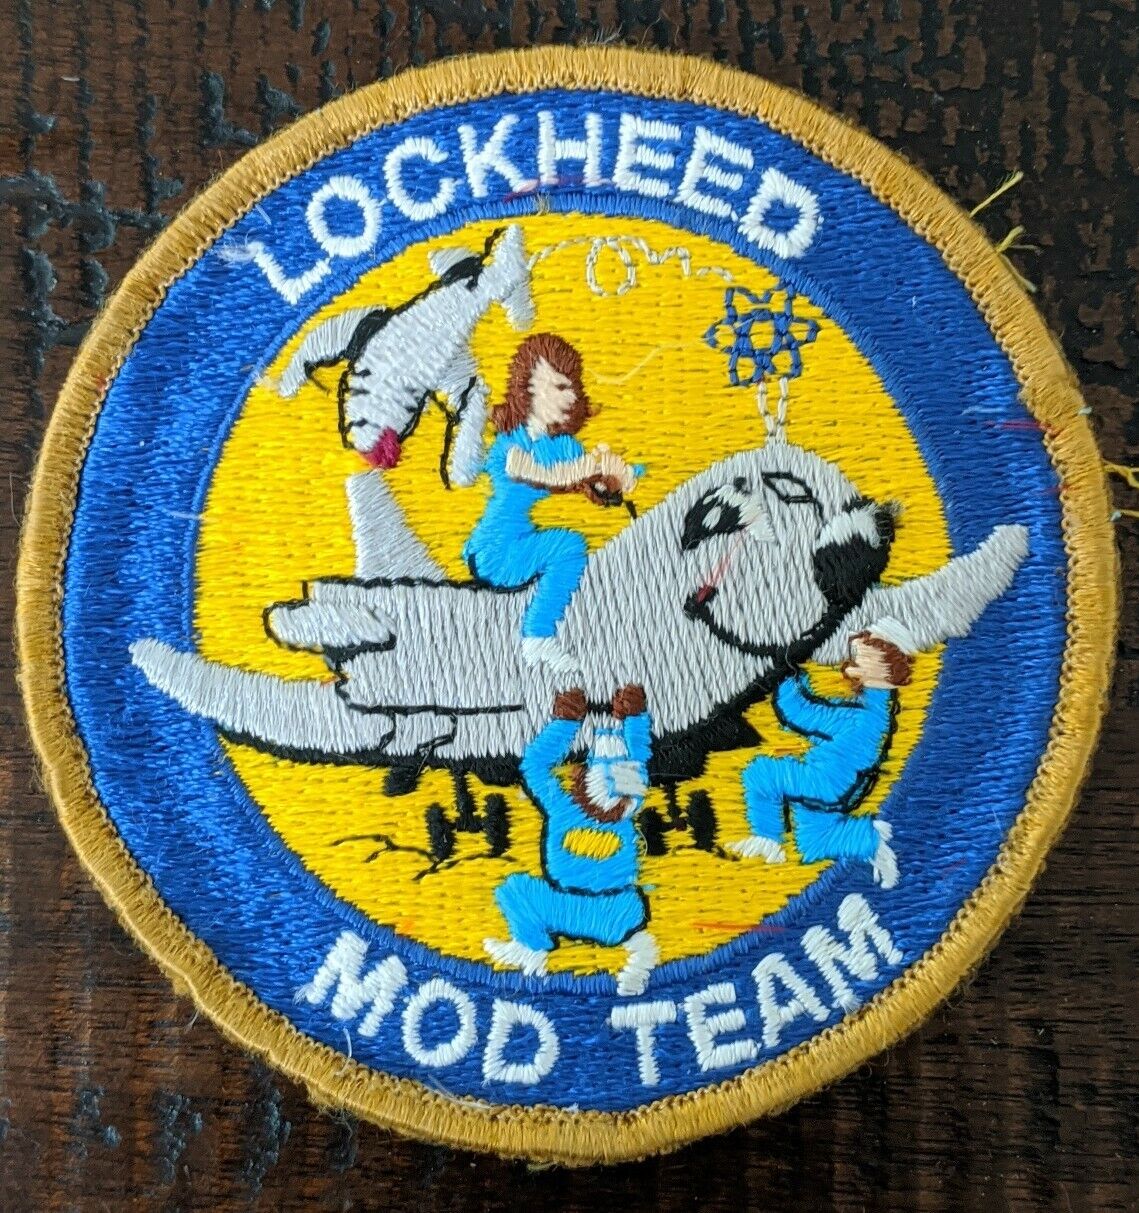 Vintage Lockheed Mod Team Patch